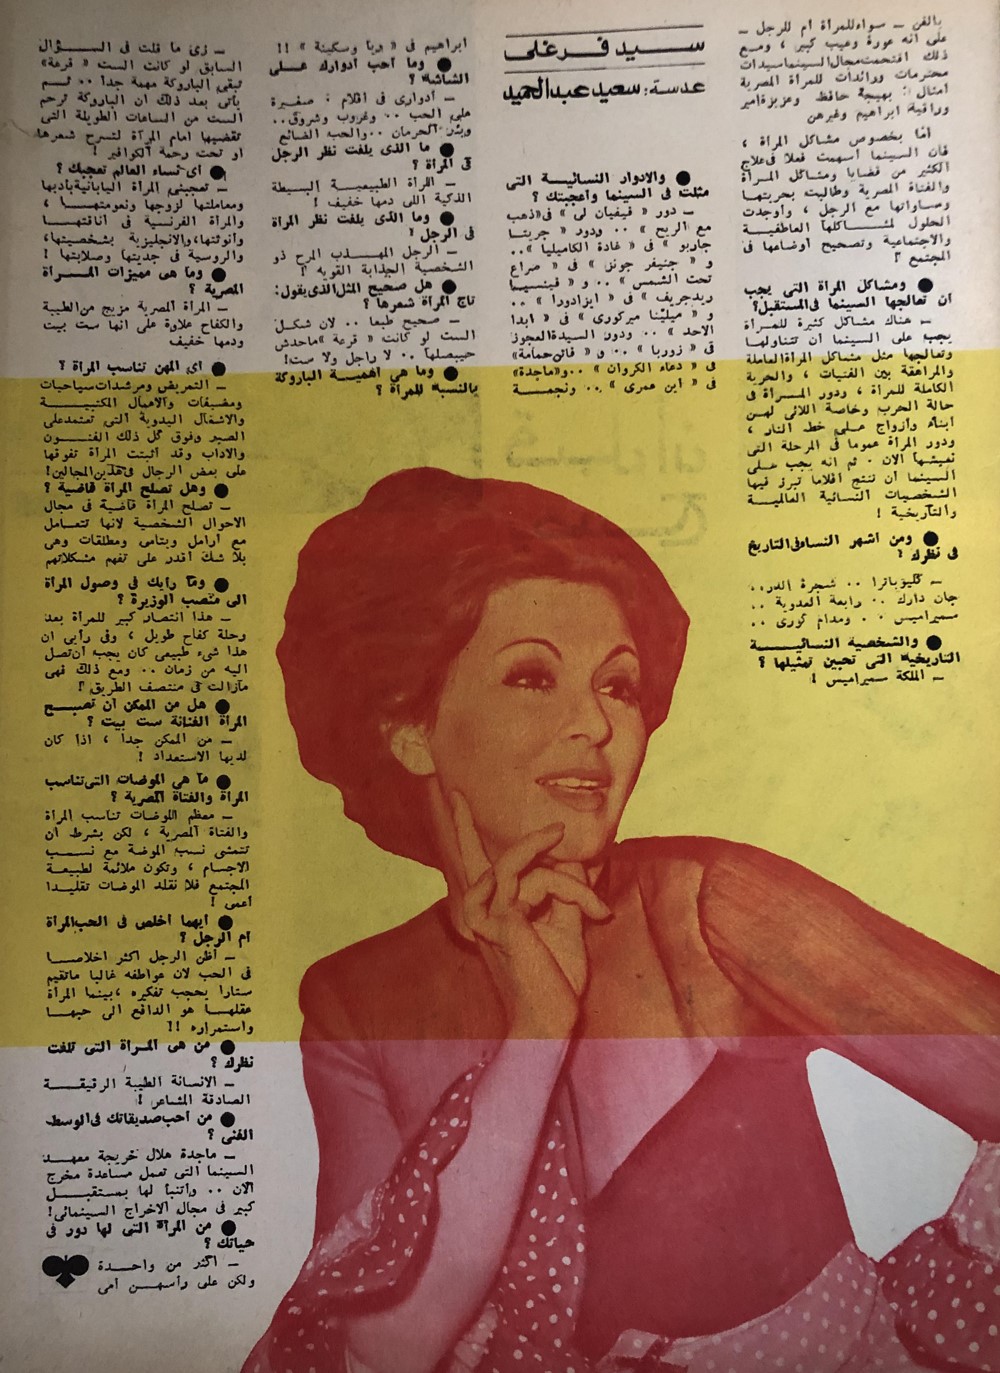 حوار صحفي : سعاد حسني .. الرجل أكثر إخلاصاً في الحب 1972 م 261